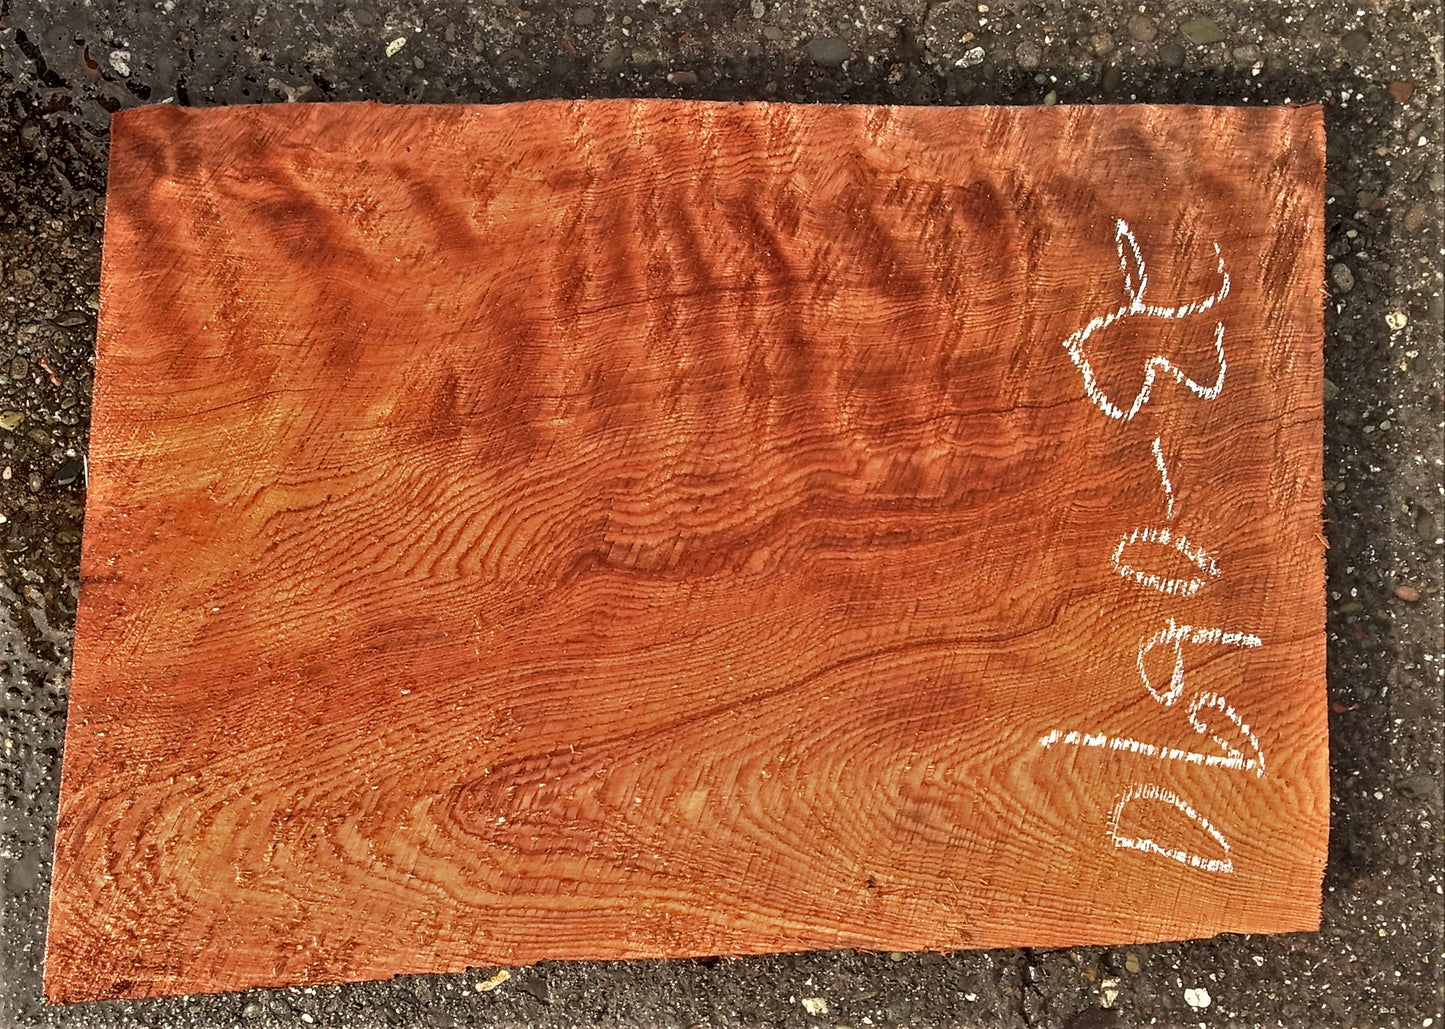 Quilted redwood | guitar billet | wood turning | DIY crafts | g23-0690